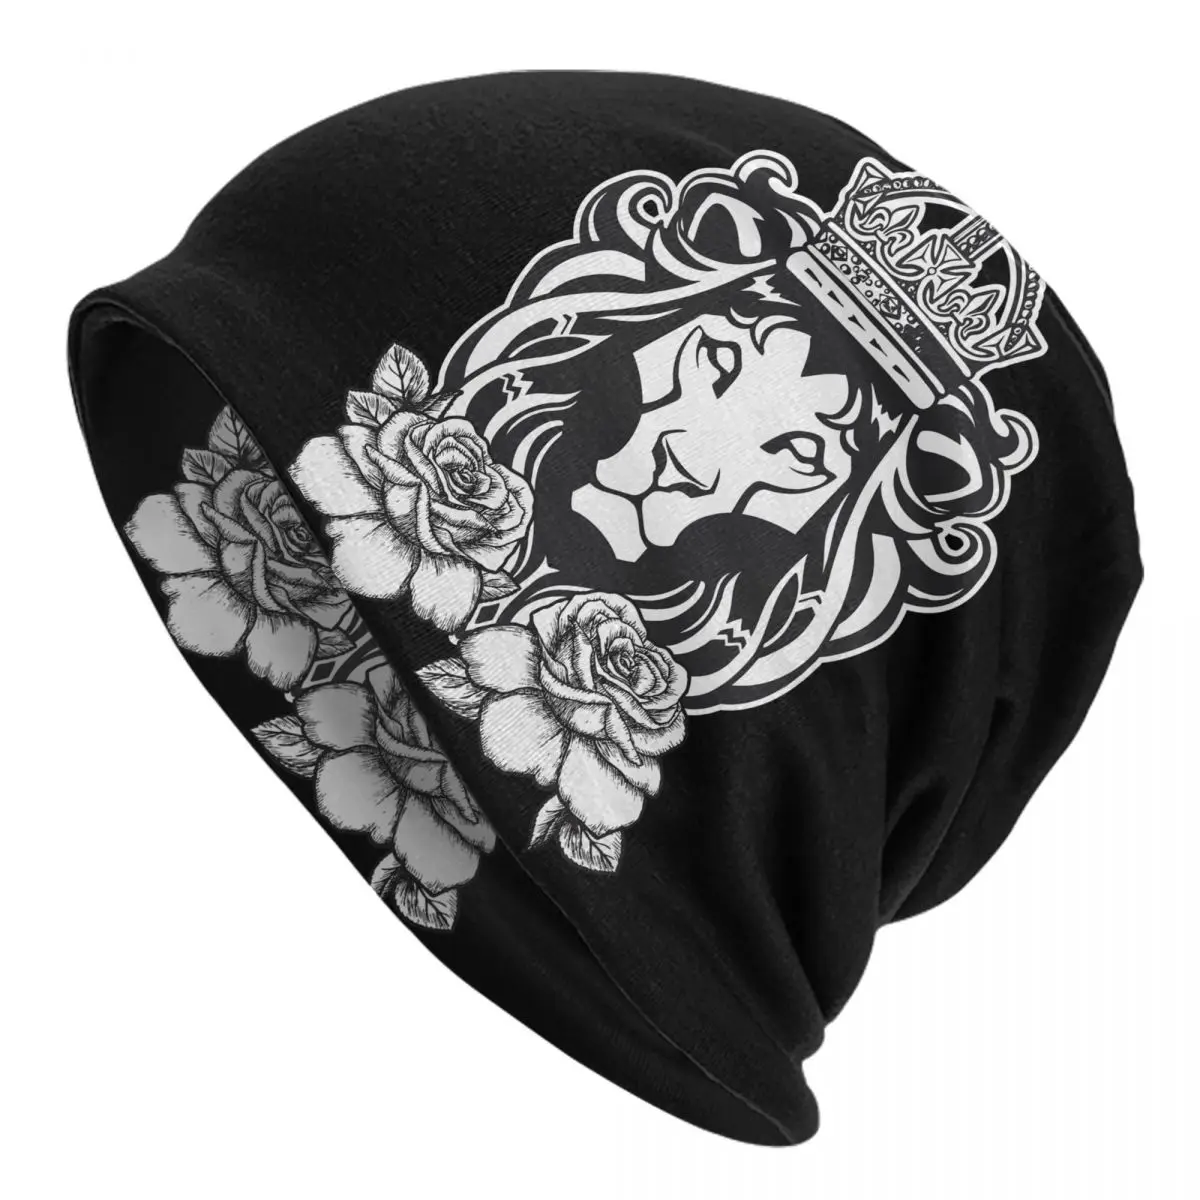 Lion Caps Men Women Unisex Streetwear Winter Warm Knit Hat Adult funny Hats